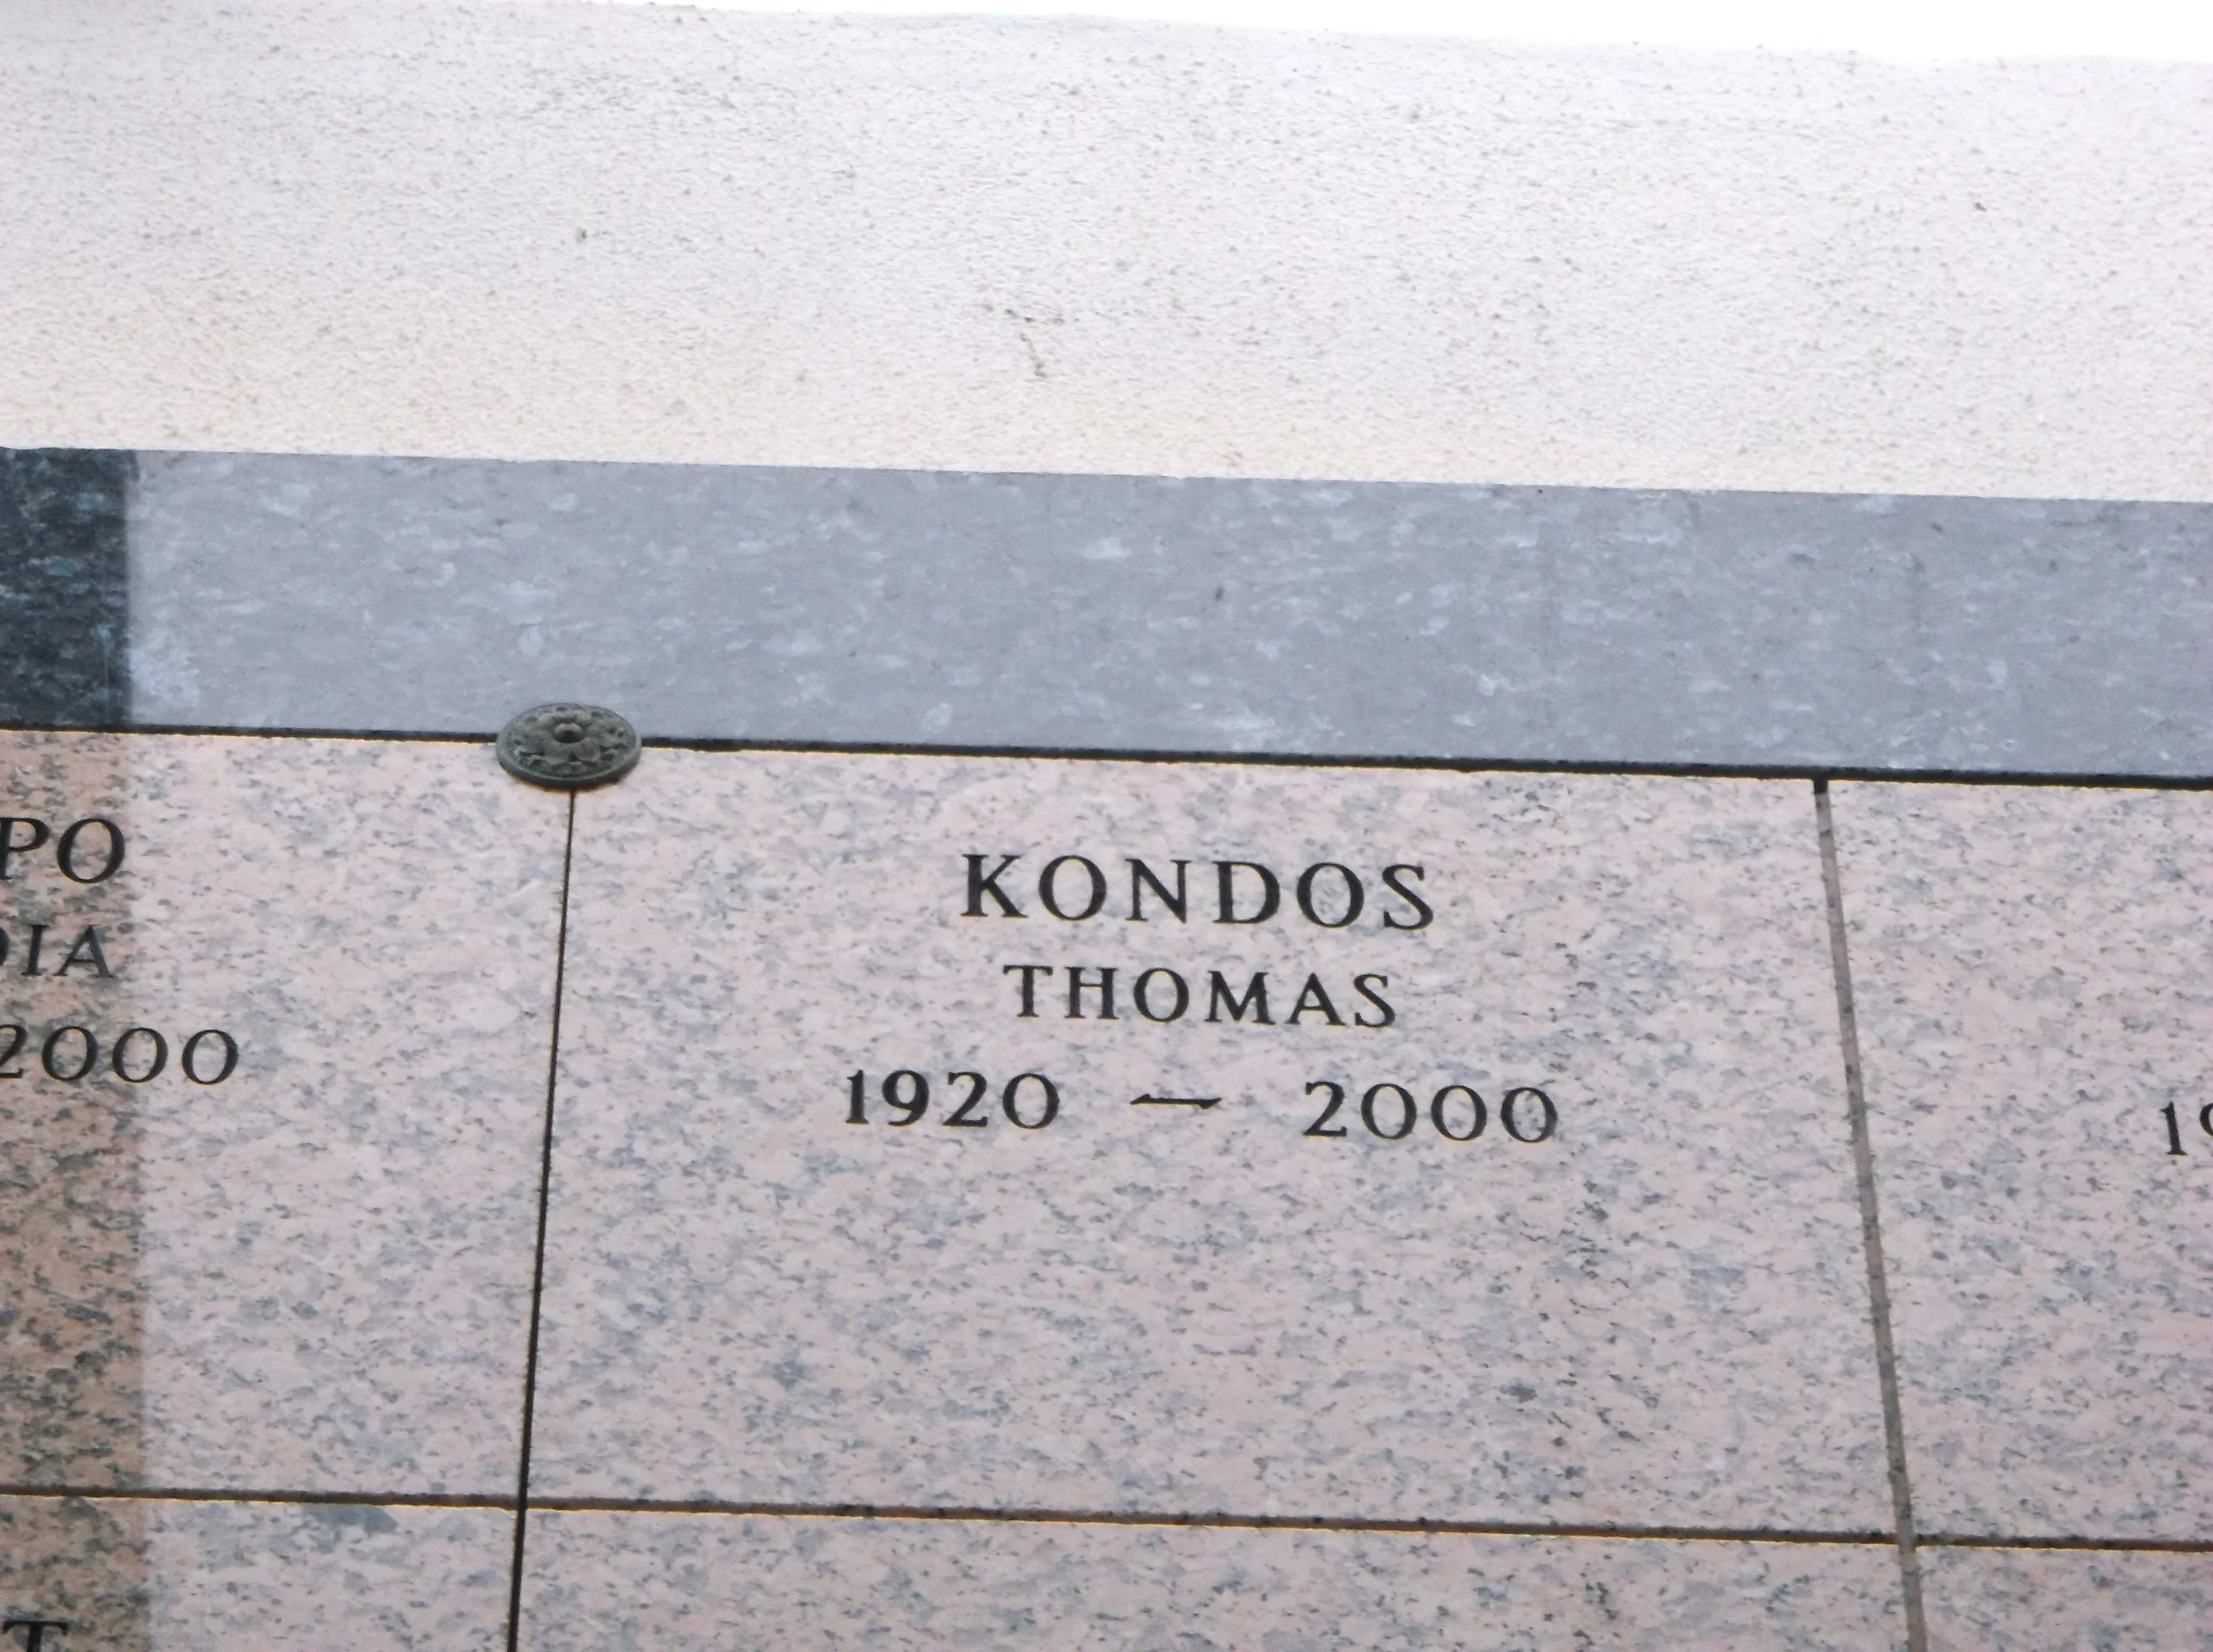 Thomas Kondos